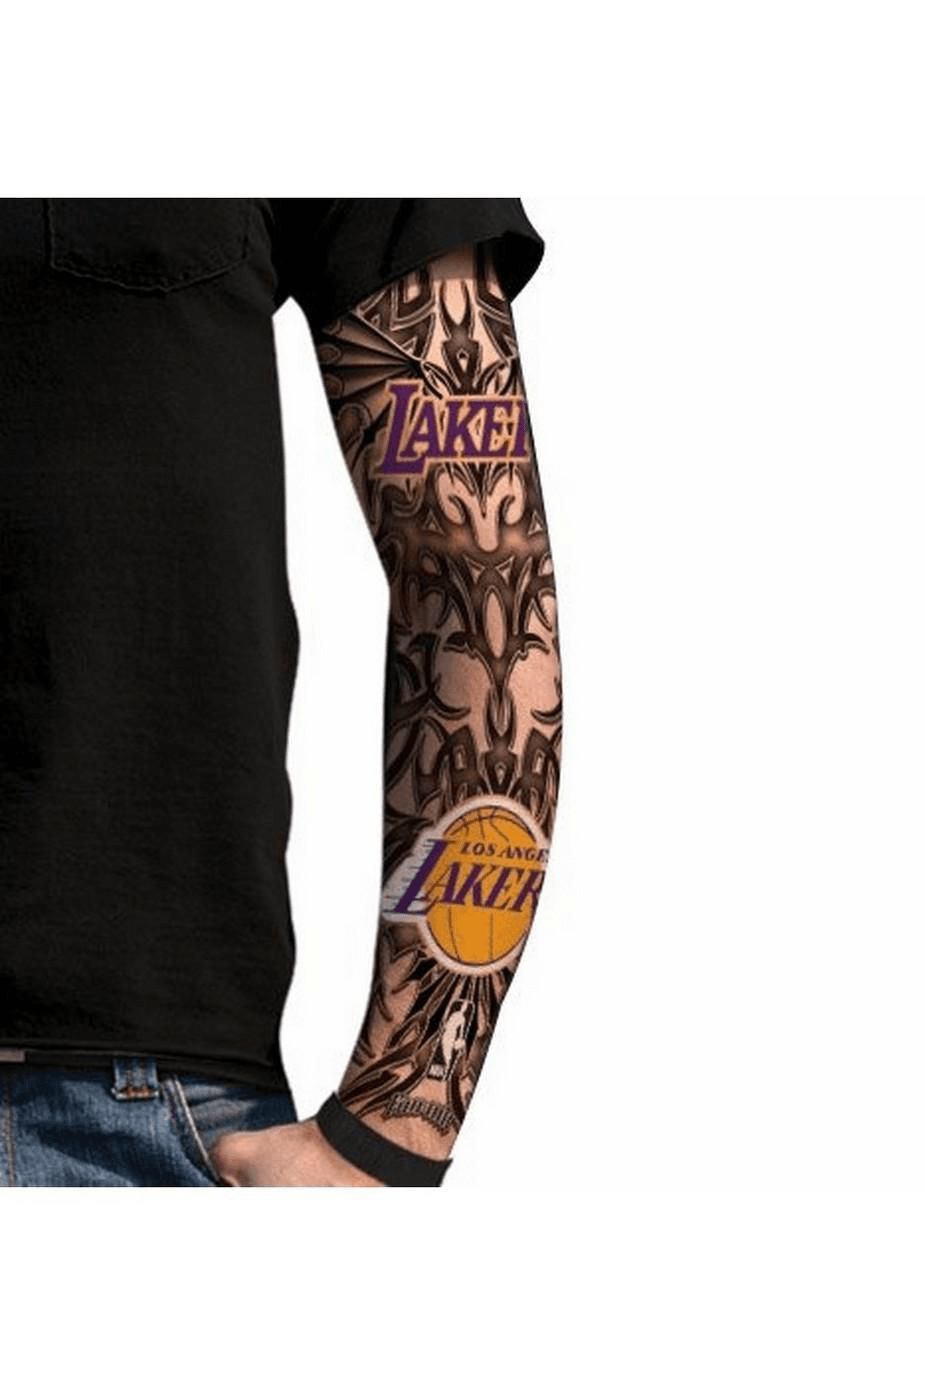 Kobe Bryant Los Angeles Lakers Realistic NBA Sleeve